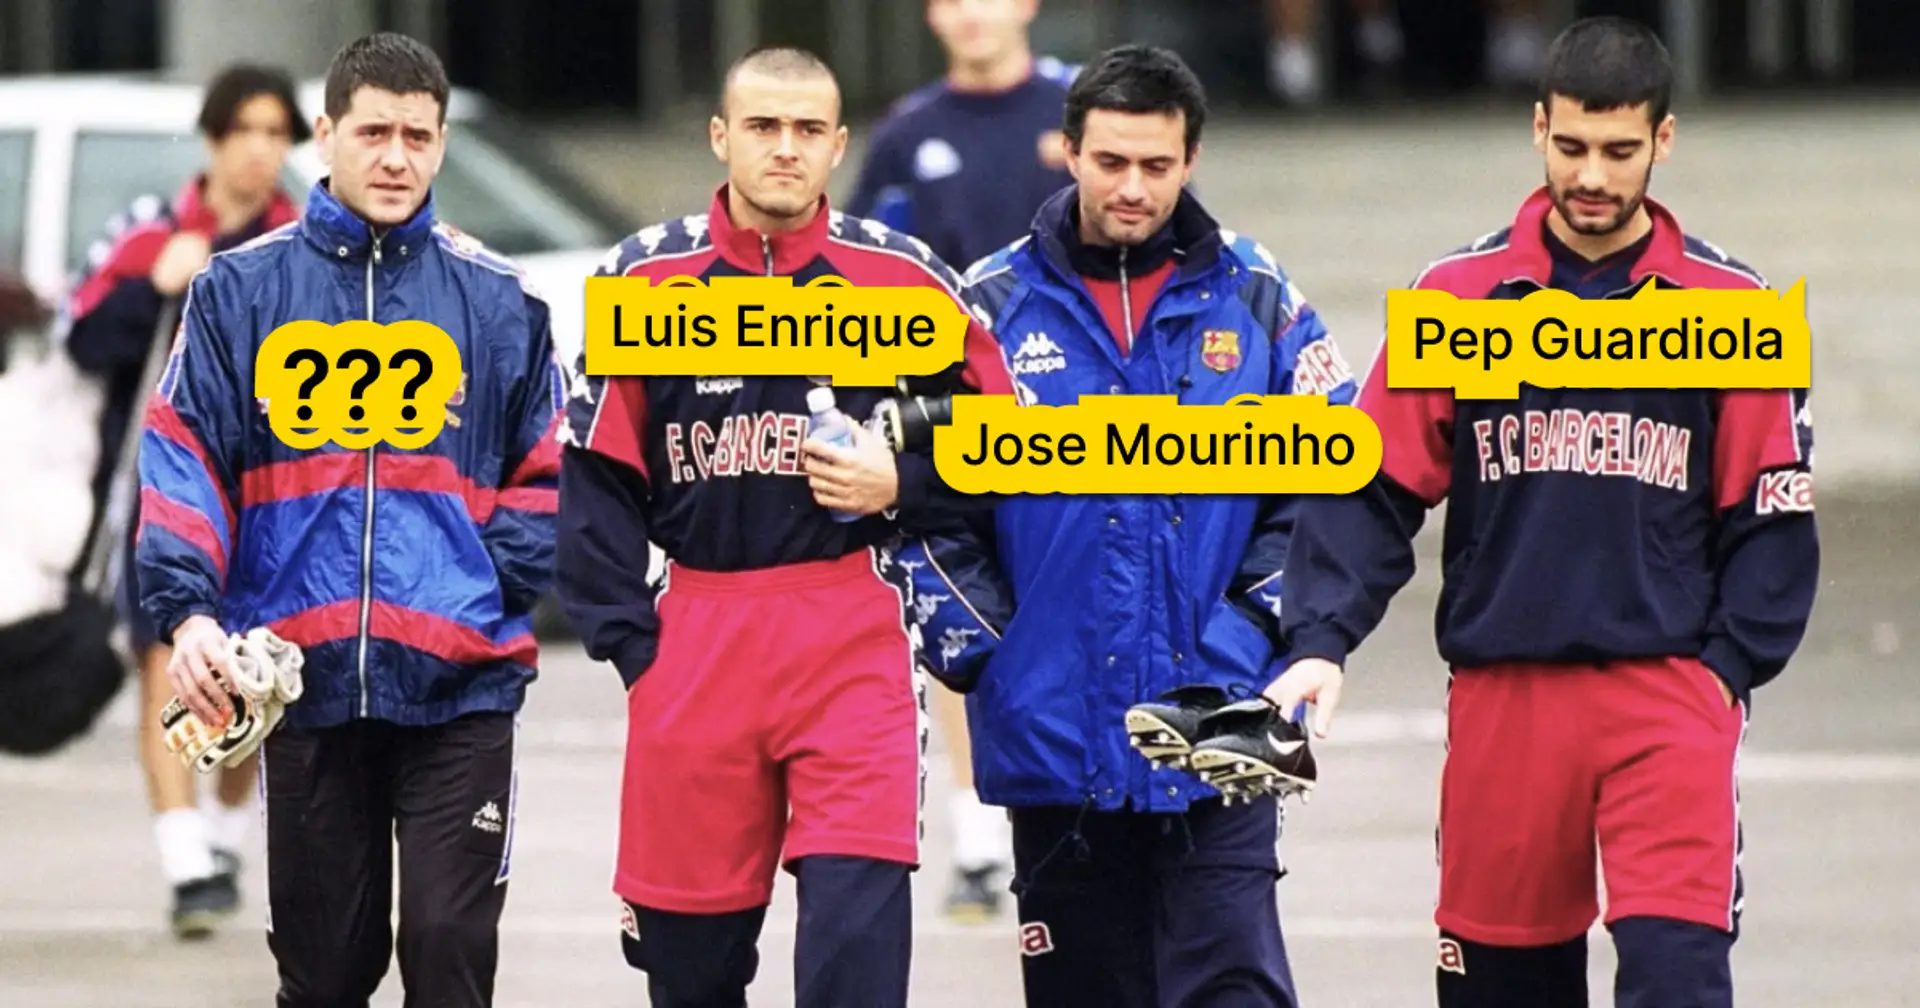 ¿Quién es el cuarto hombre en esta foto icónica? Es importante para la historia del Barça de una manera especial